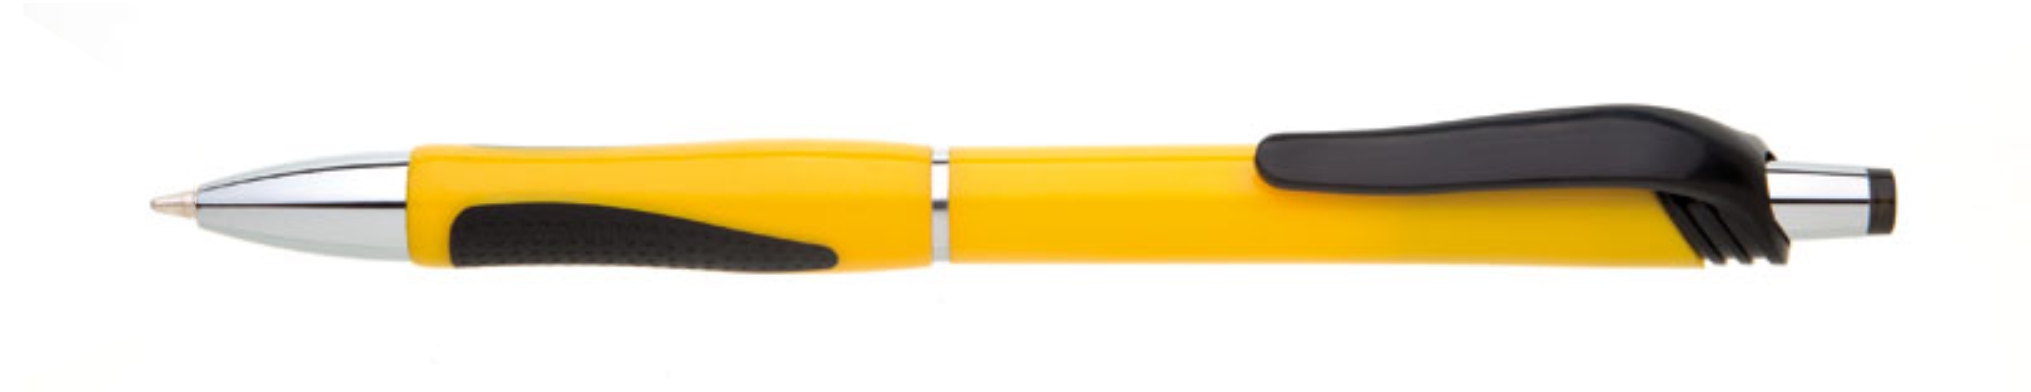 Propiska plast COLORI hrot 1mm, žlutá